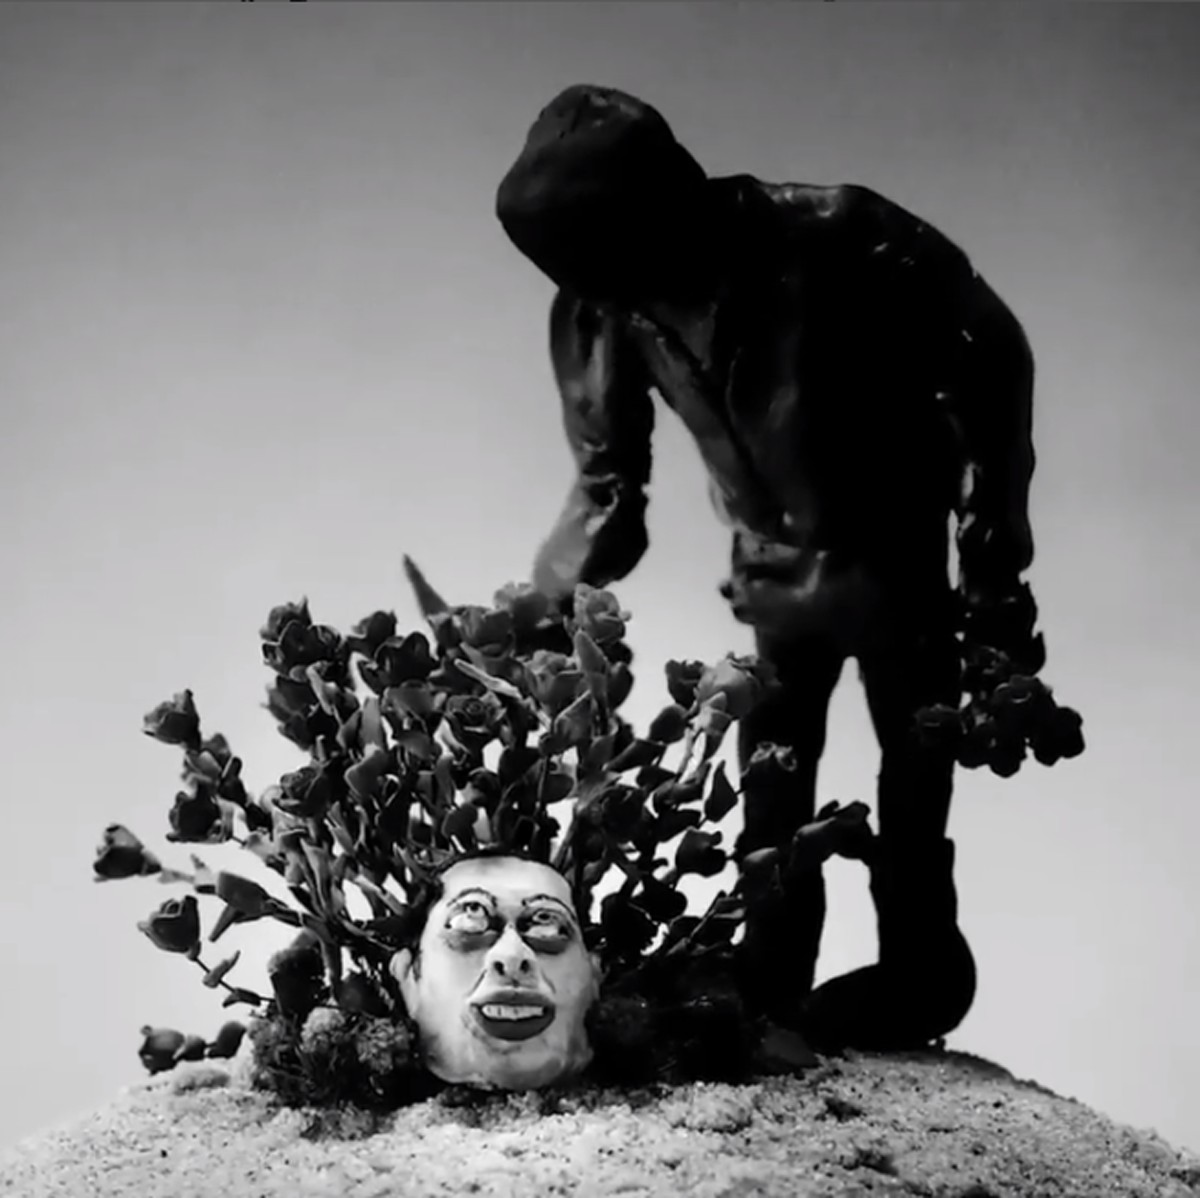 Kanye West enterrra Pete Davidson em clipe (Foto: Reprodução Instagram)